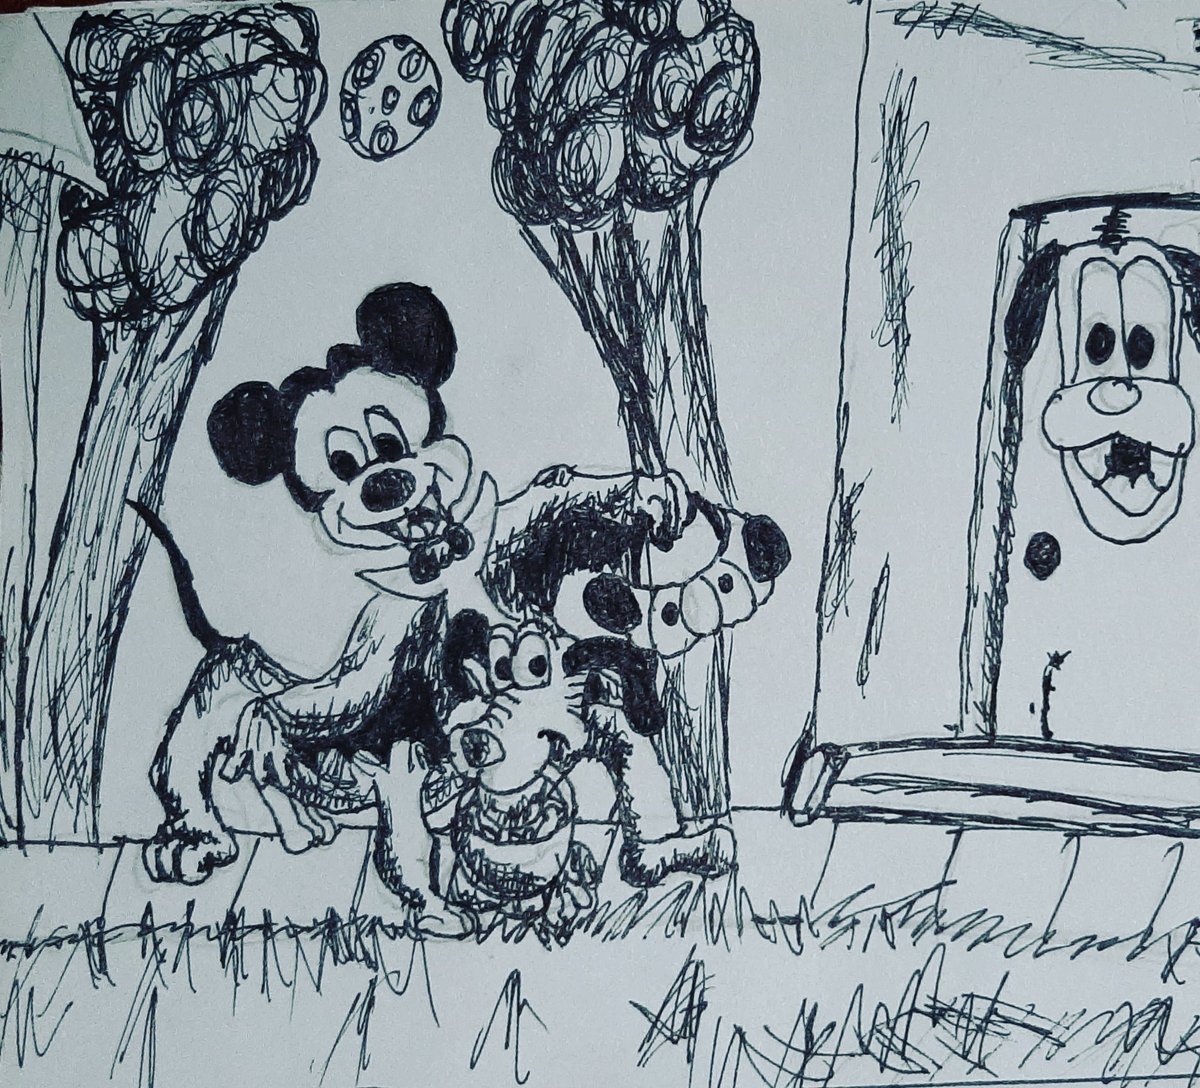 Happy Halloween from Mickey mouse and Pluto #day7 #Inktober #ink #inktober2020 #inktober2020day7 #ink7 #inktoberday7 #inktober7 #wednesdaymorning #WearAMask #WeAreTikTok #WearADamnMask #WearAMaskSaveALife #virus #Halloweenbasket #Halloweenbucket